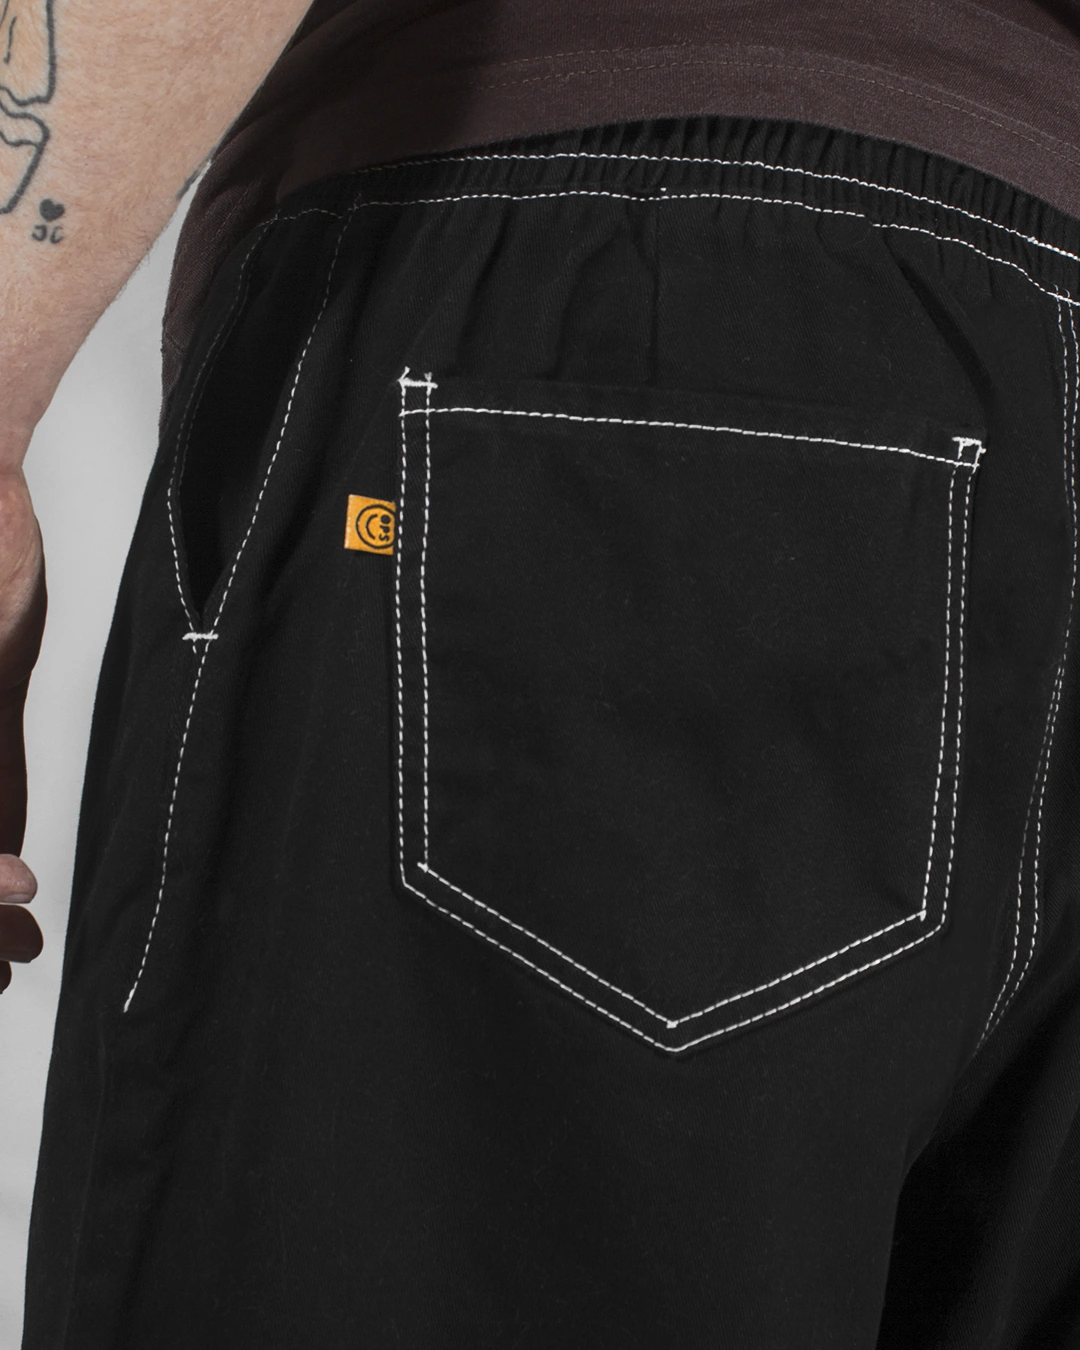 pantalón negro detalle porta llave cintura elastica cordon costuras expuestas invertidas bolsillo